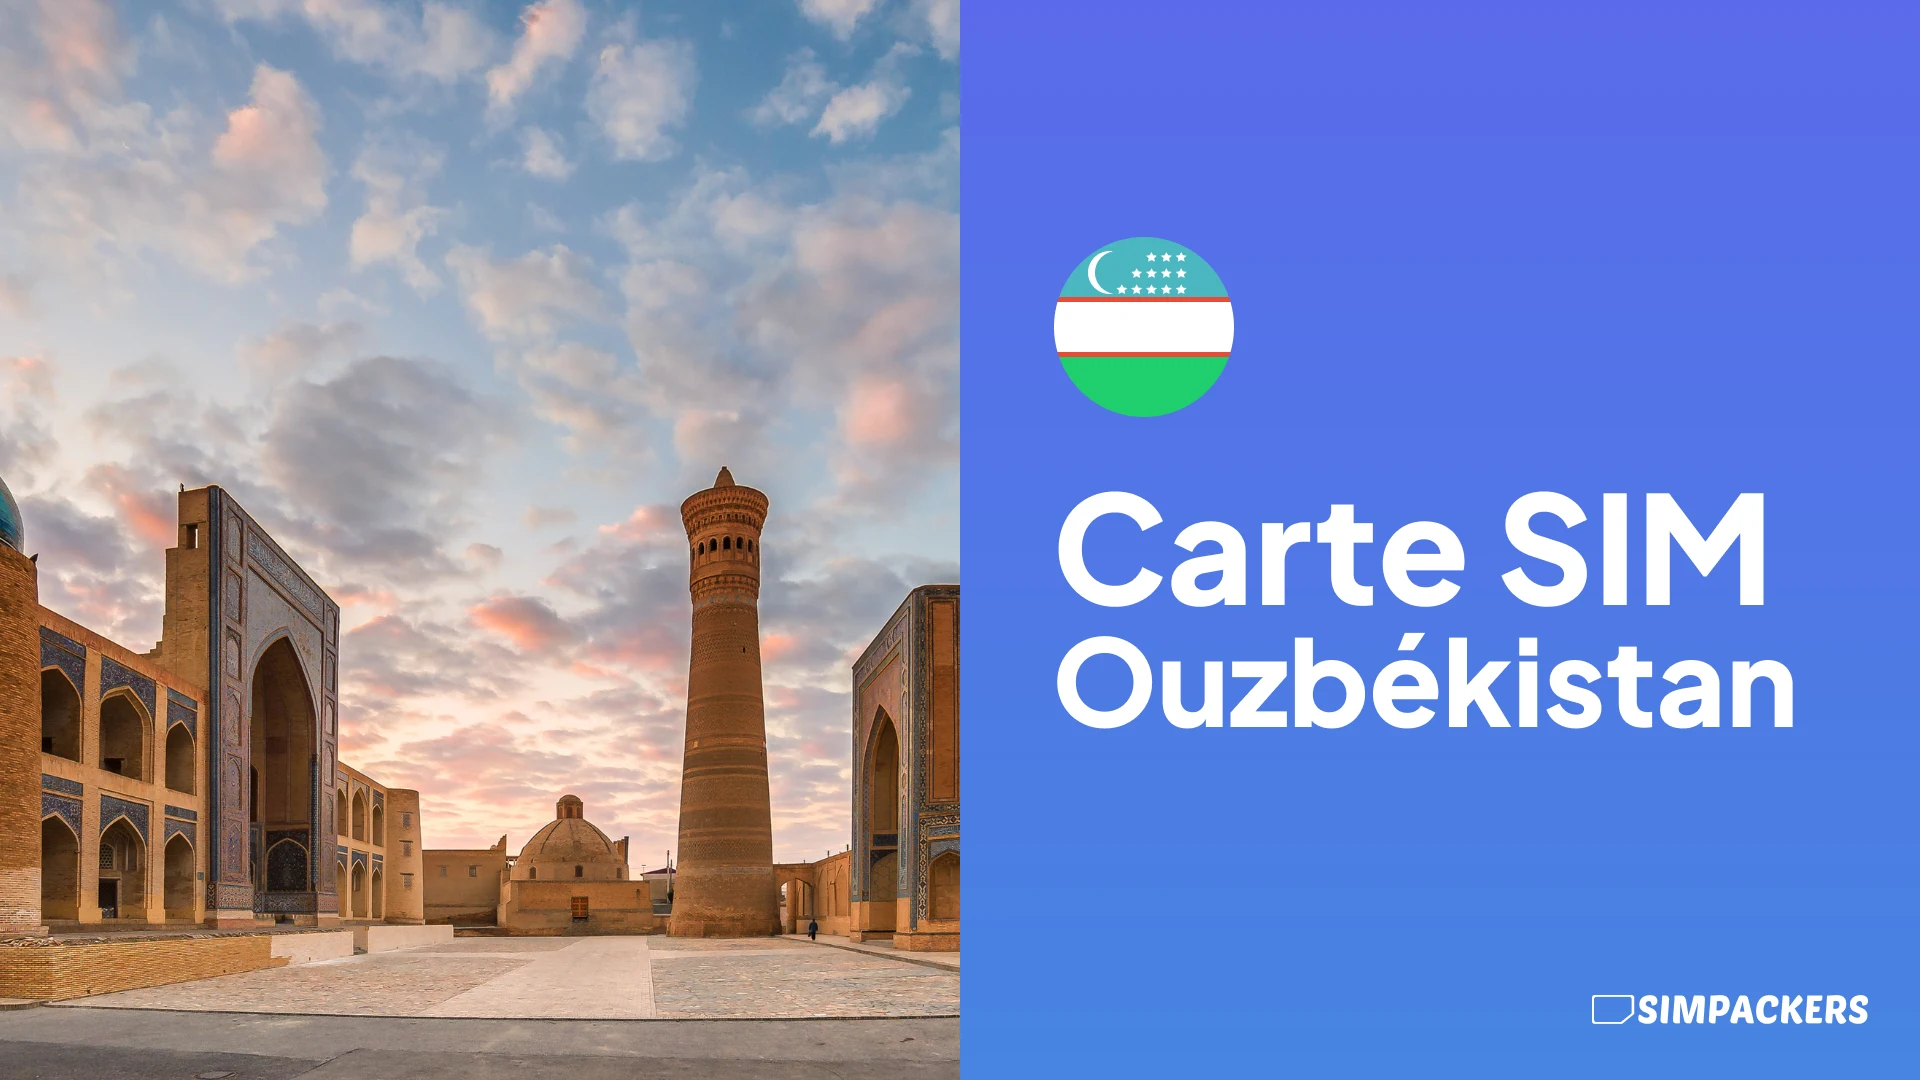 FR/FEATURED_IMAGES/carte-sim-ouzbekistan.webp